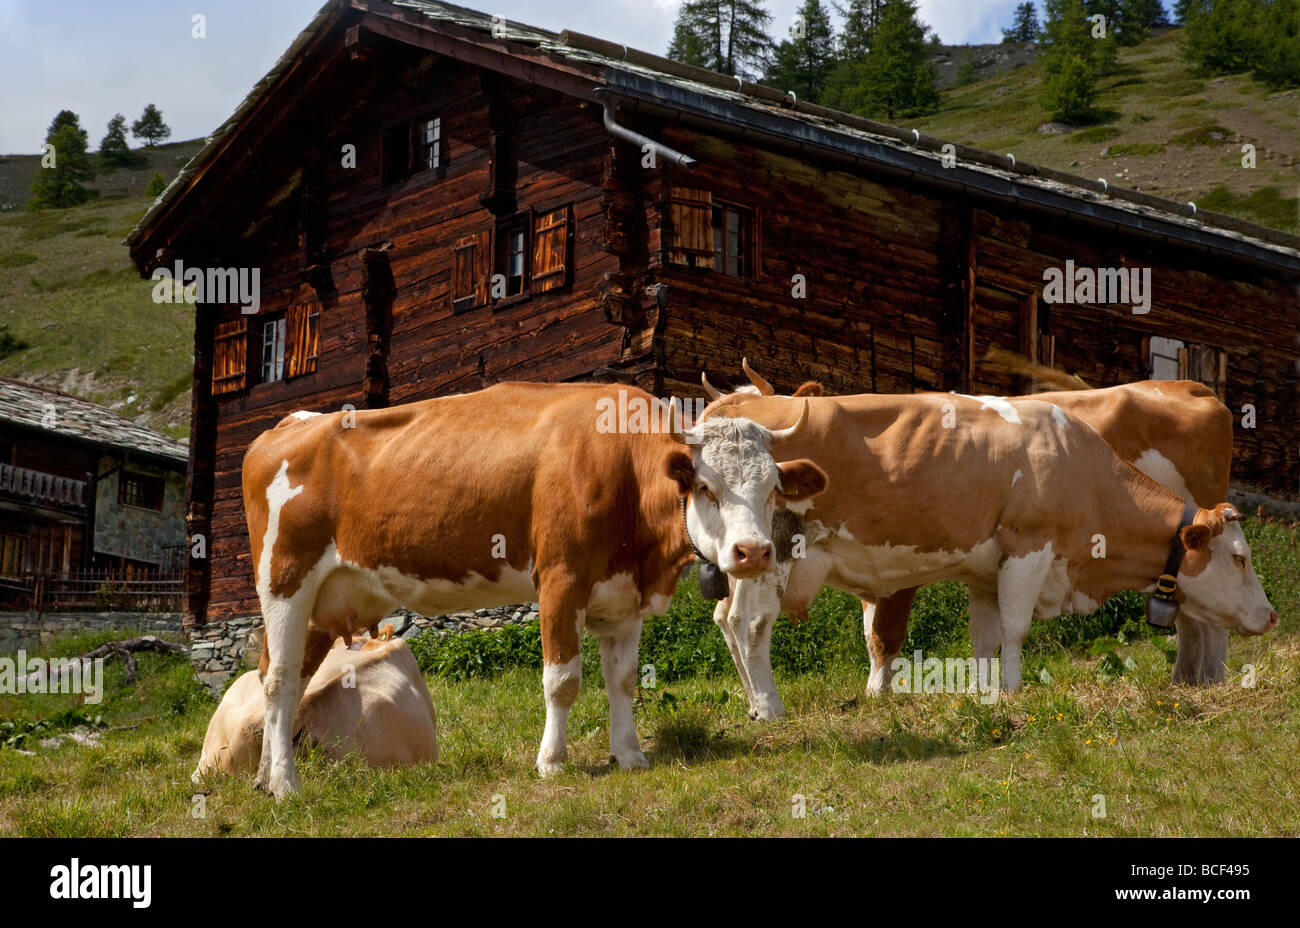 Les vaches avec des cloches à côté de la maison suisse en bois sur la colline, Zermatt, Suisse, Europe. Banque D'Images